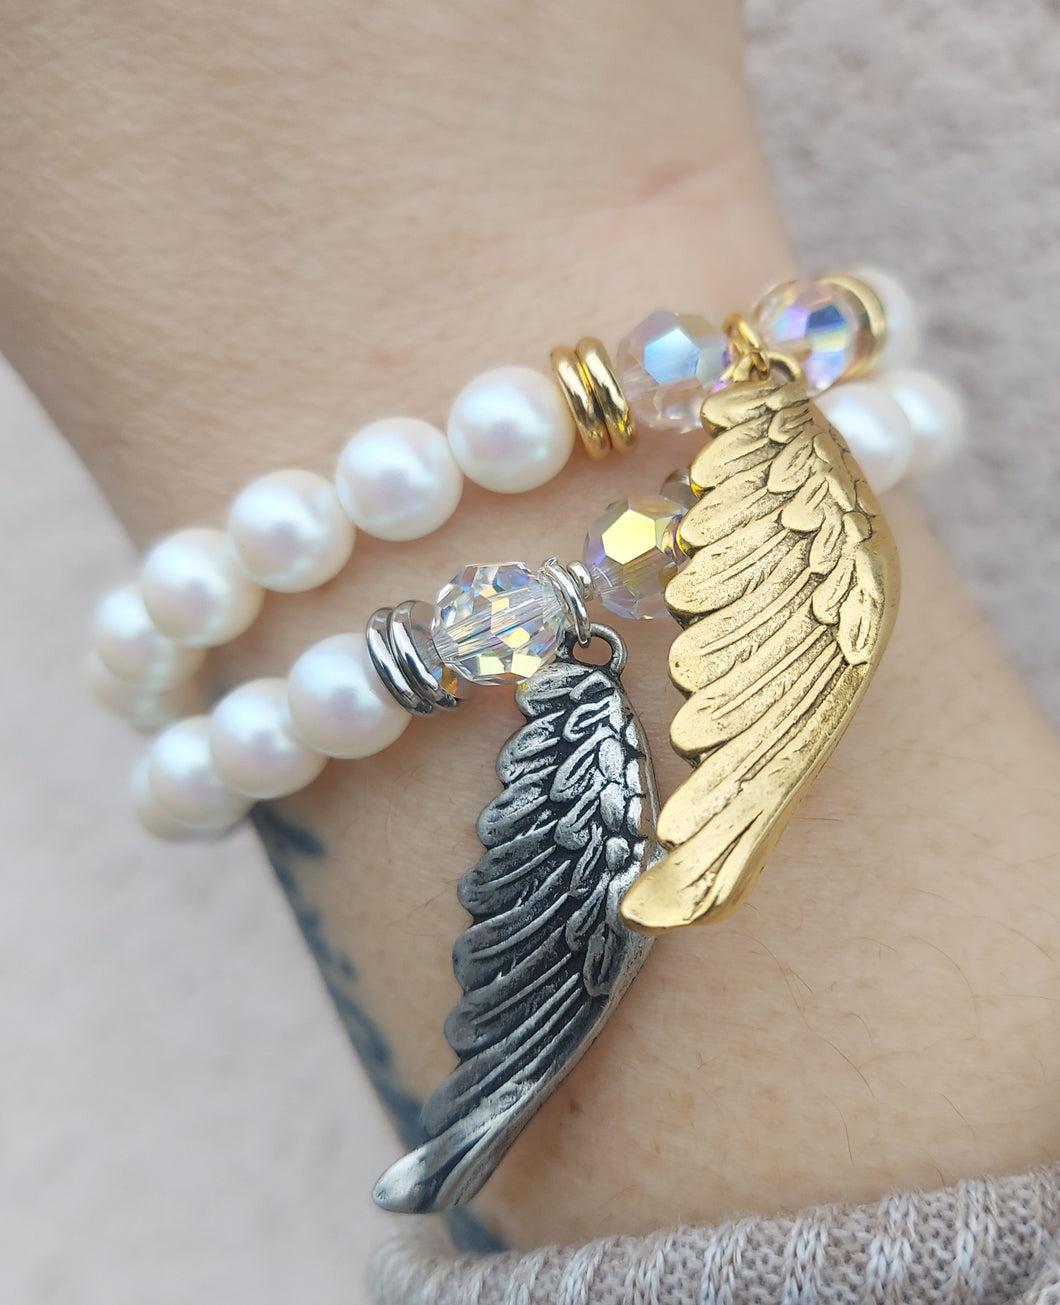 Angel Wing on White Pearl - Religious Stash Bracelet